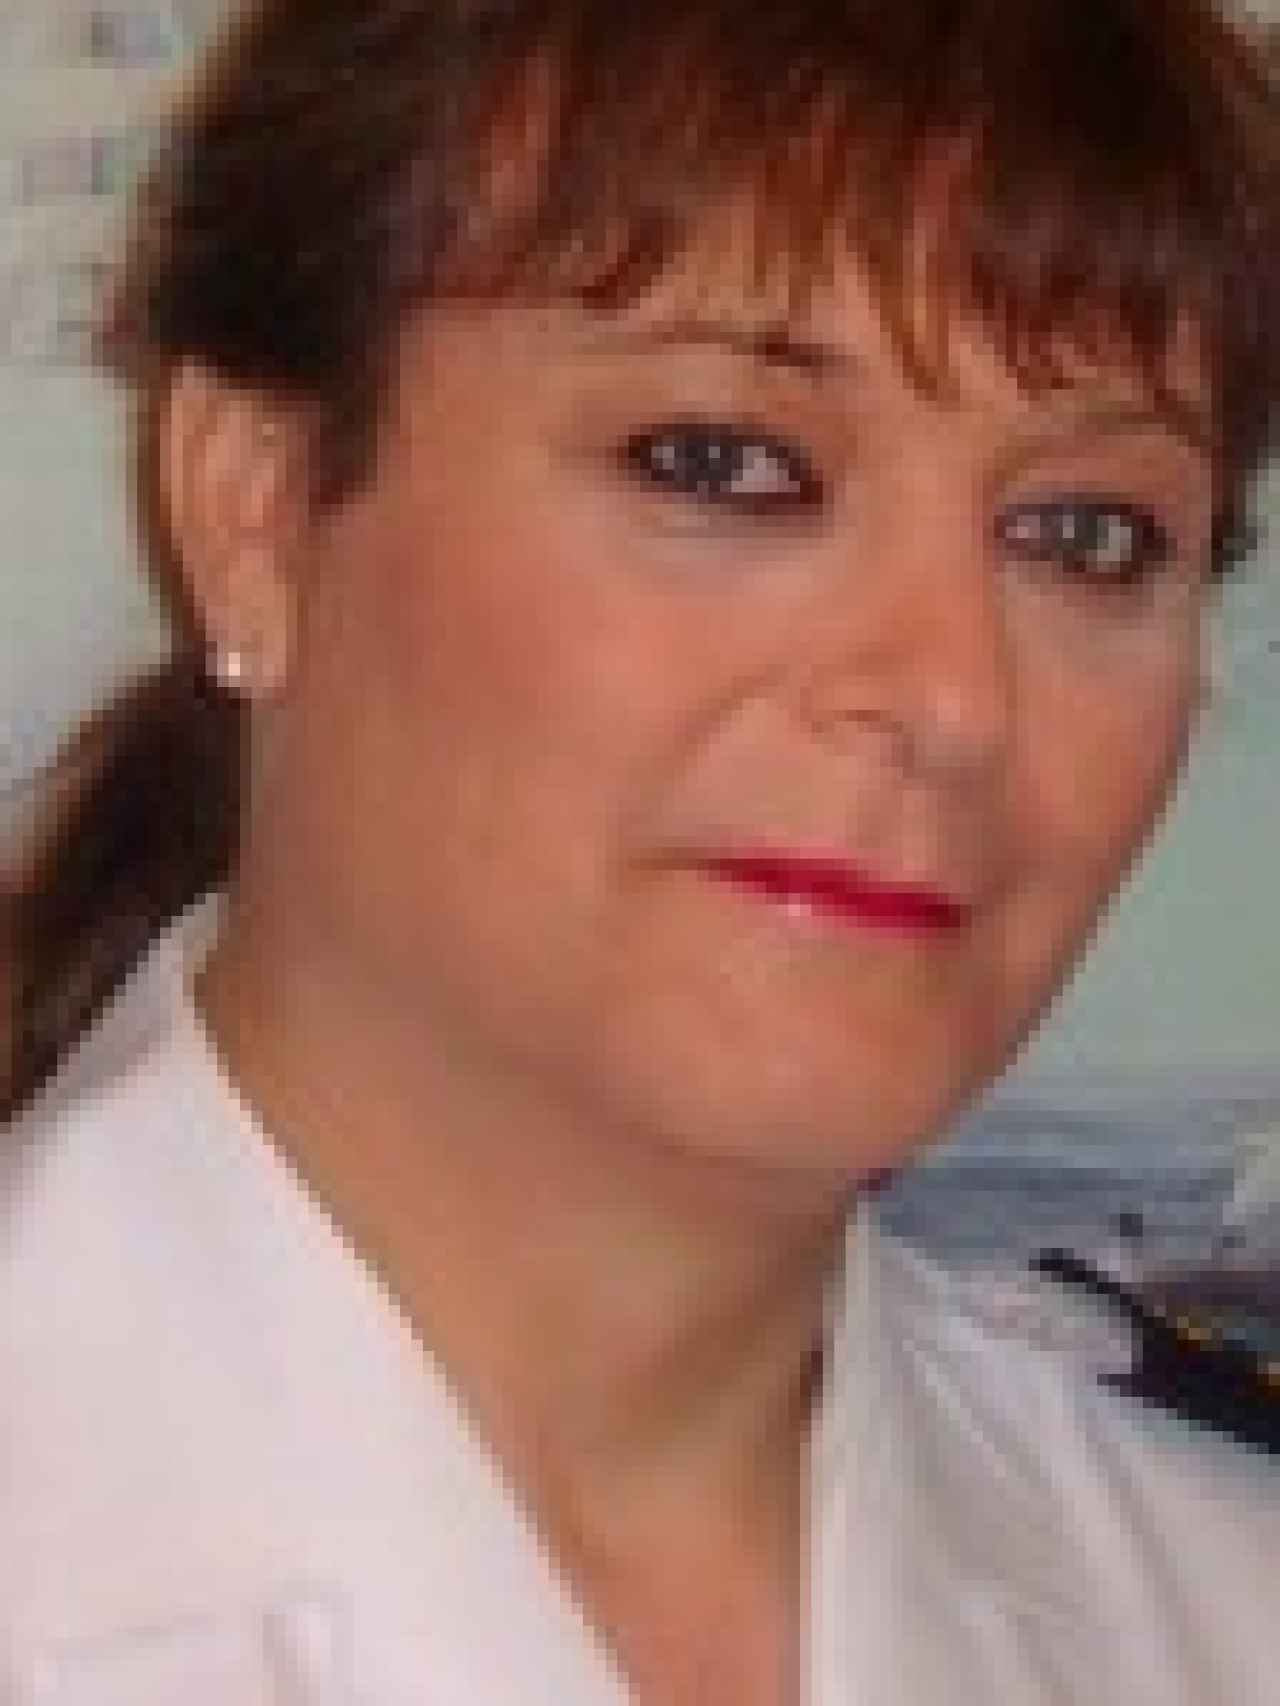 Carolina Meléndez